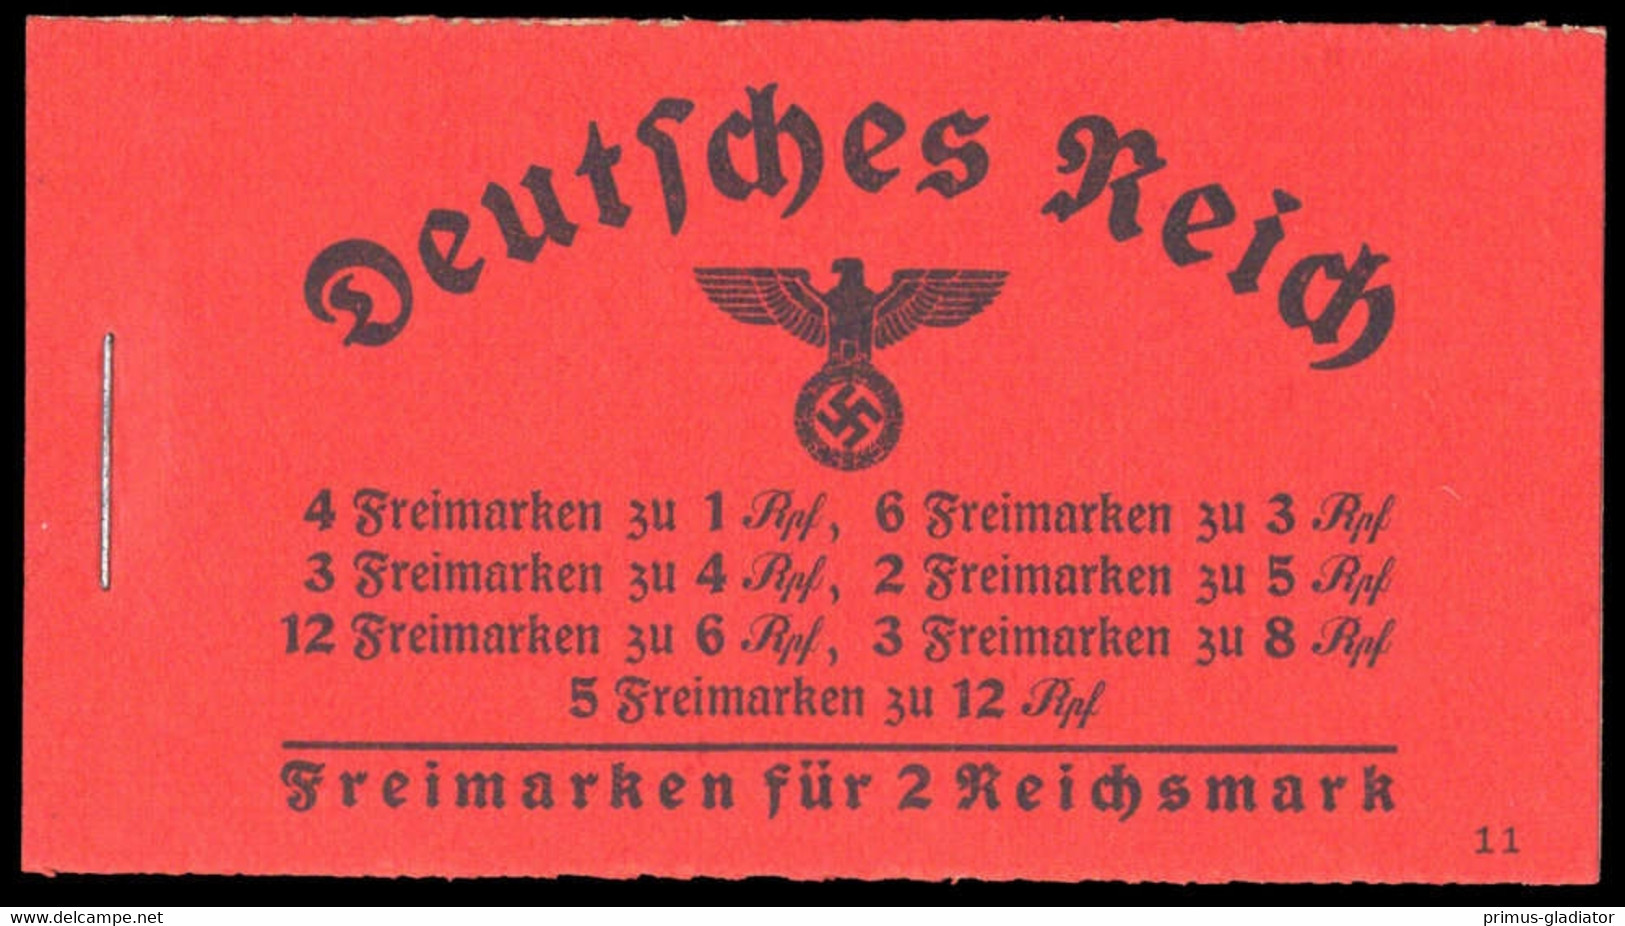 1940, Deutsches Reich, MH 39.1, ** - Markenheftchen